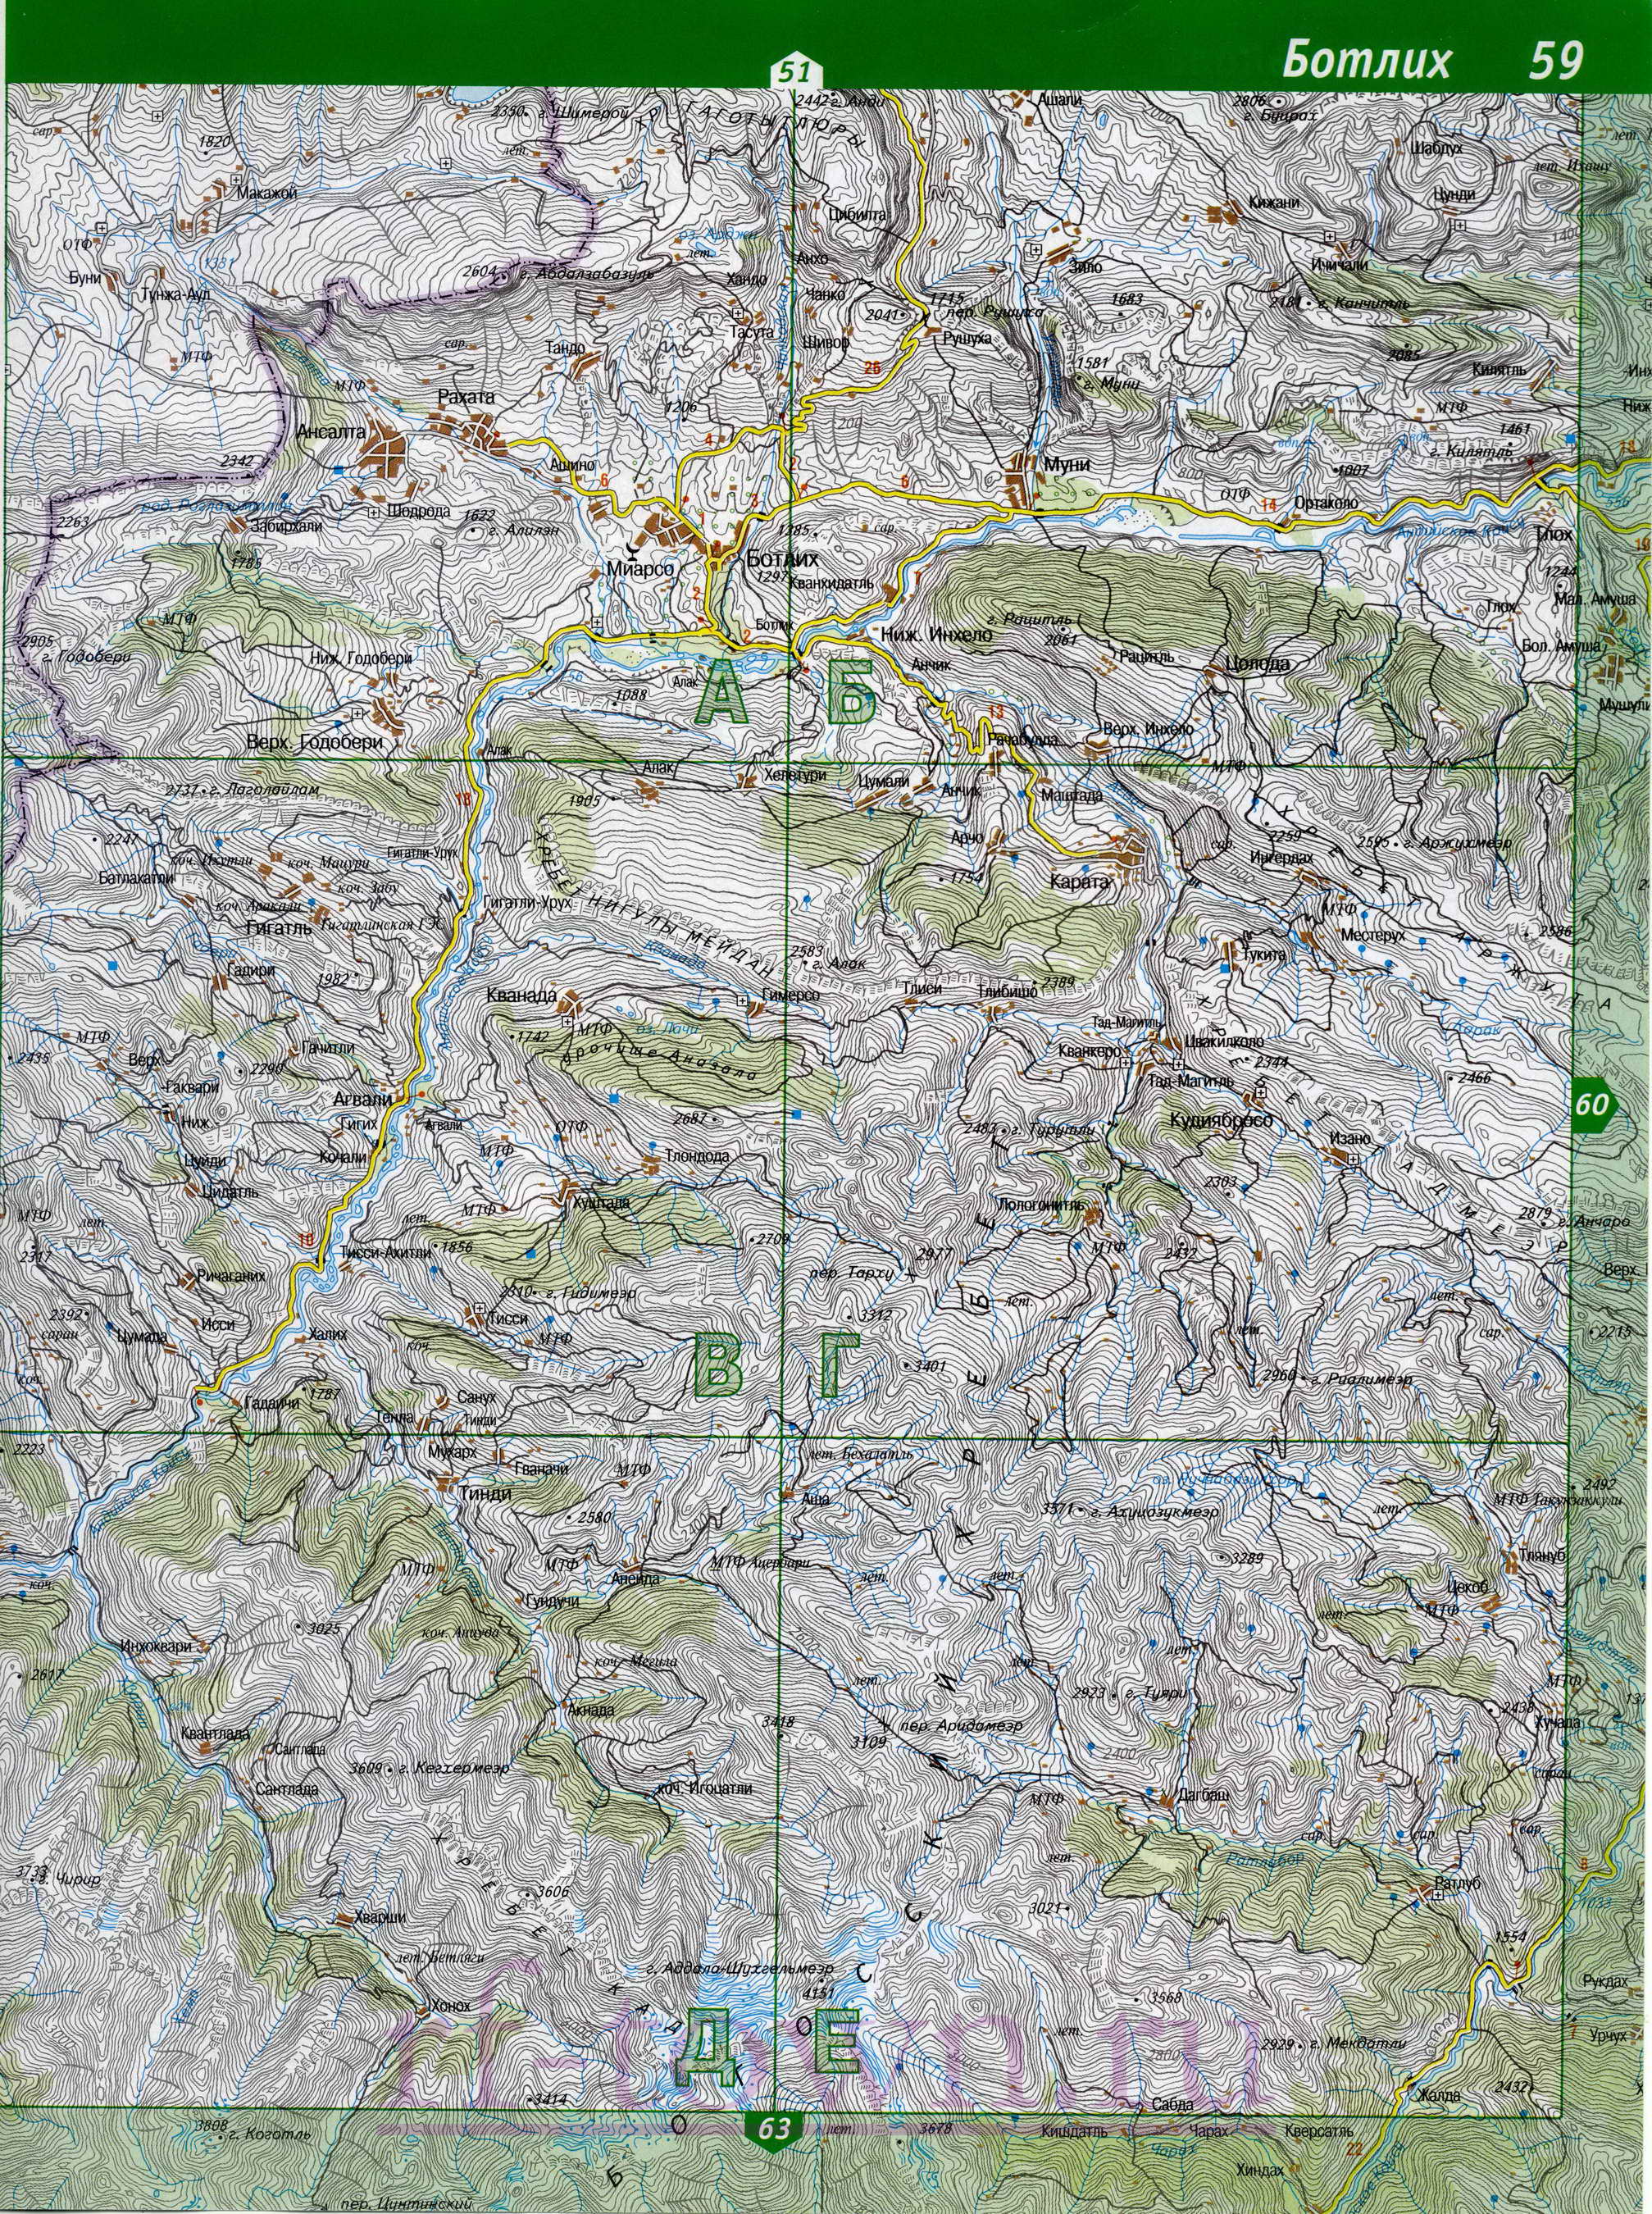 Карта Чечни. Топографическая карта Чечни. Подробная карта Чечни масштаба 1см:2км, C3 - 